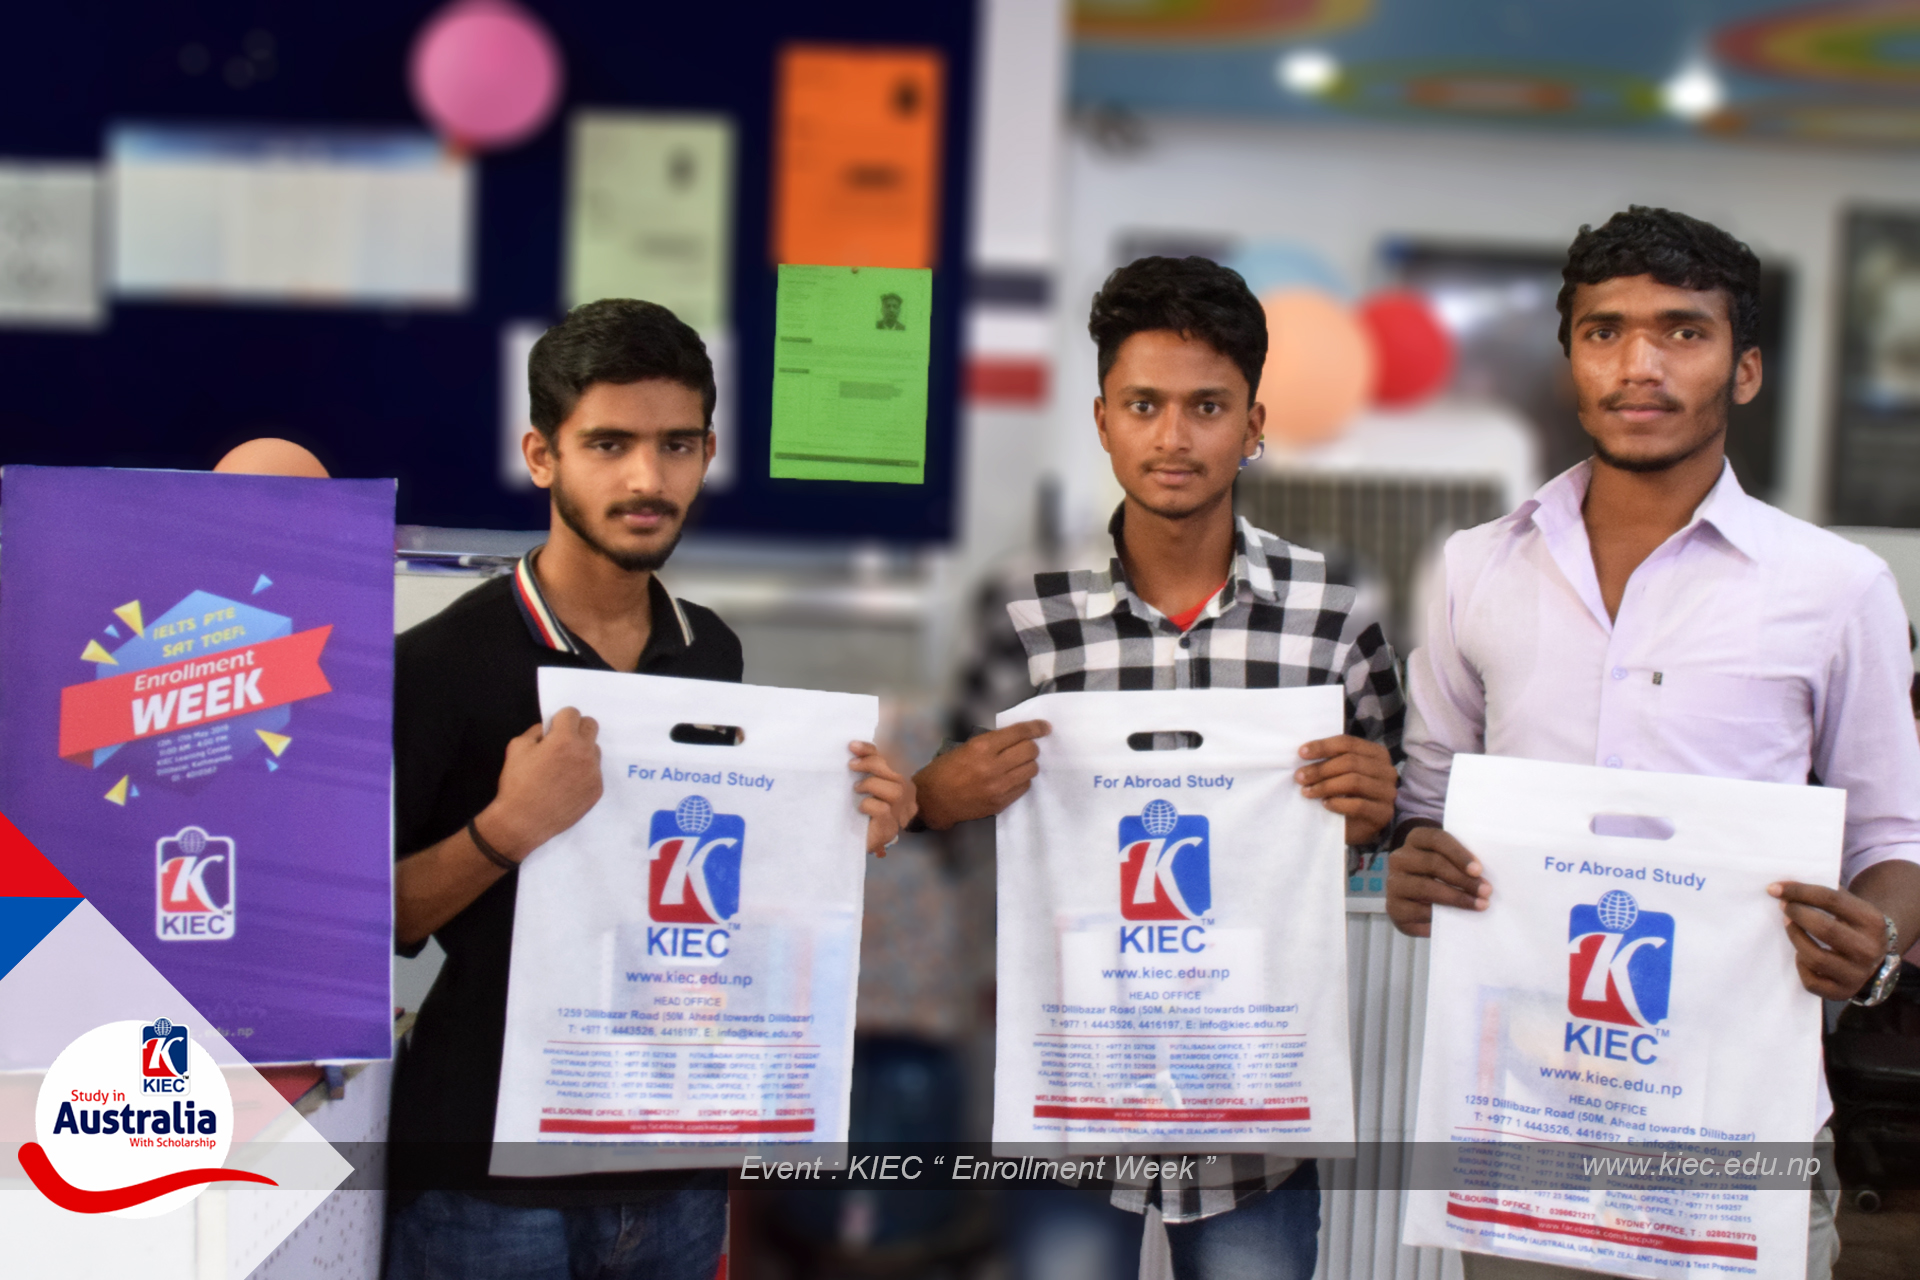 KIEC MD Rajendra Rijal distributing brochure to Students